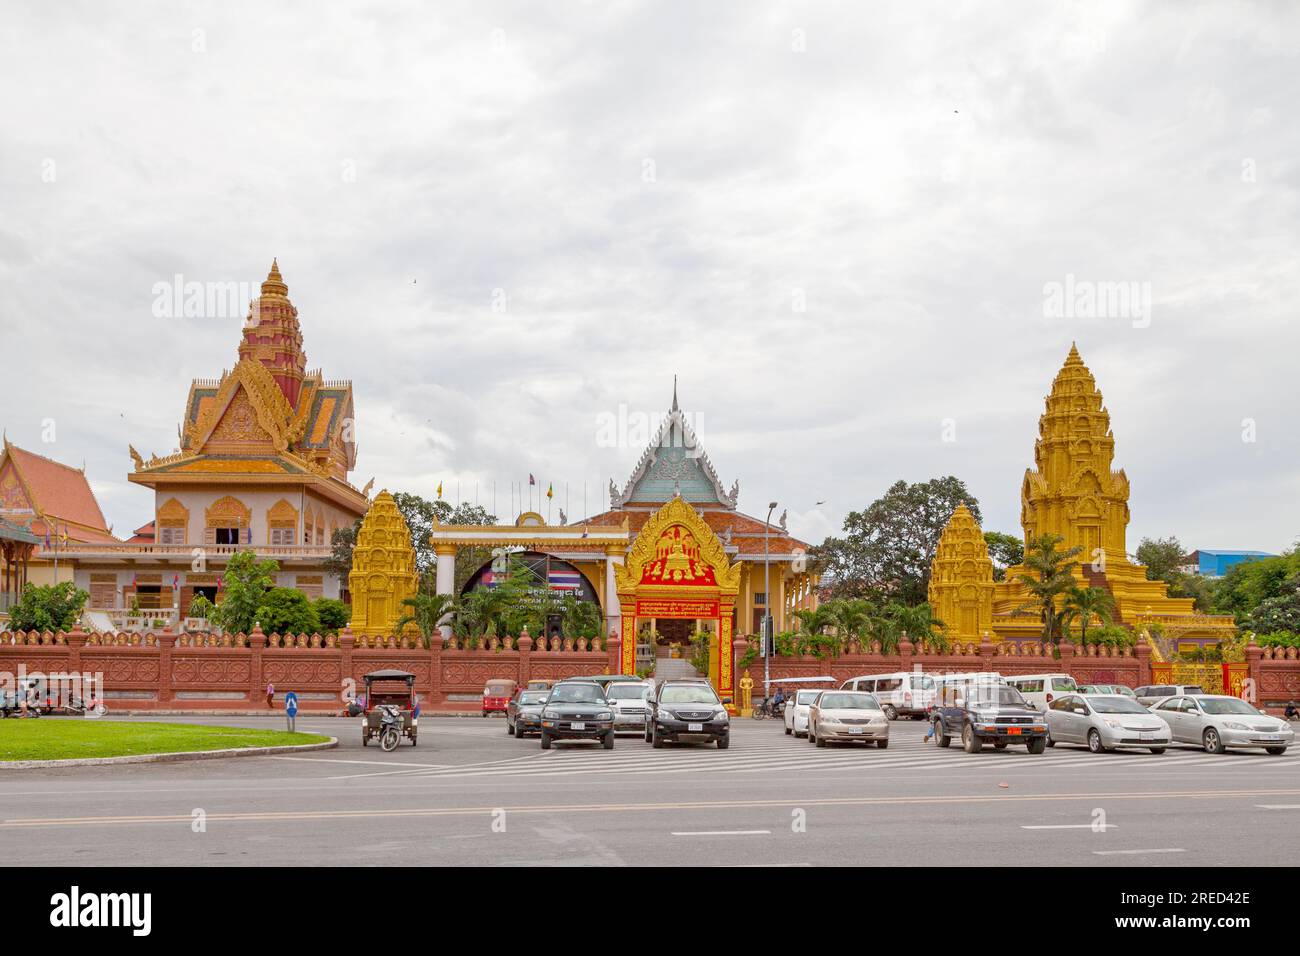 Phnom Penh, Cambodge - août 26 2018 : Wat Ounalom est un wat situé sur Sisowath Quay près du Palais Royal du Cambodge. Banque D'Images